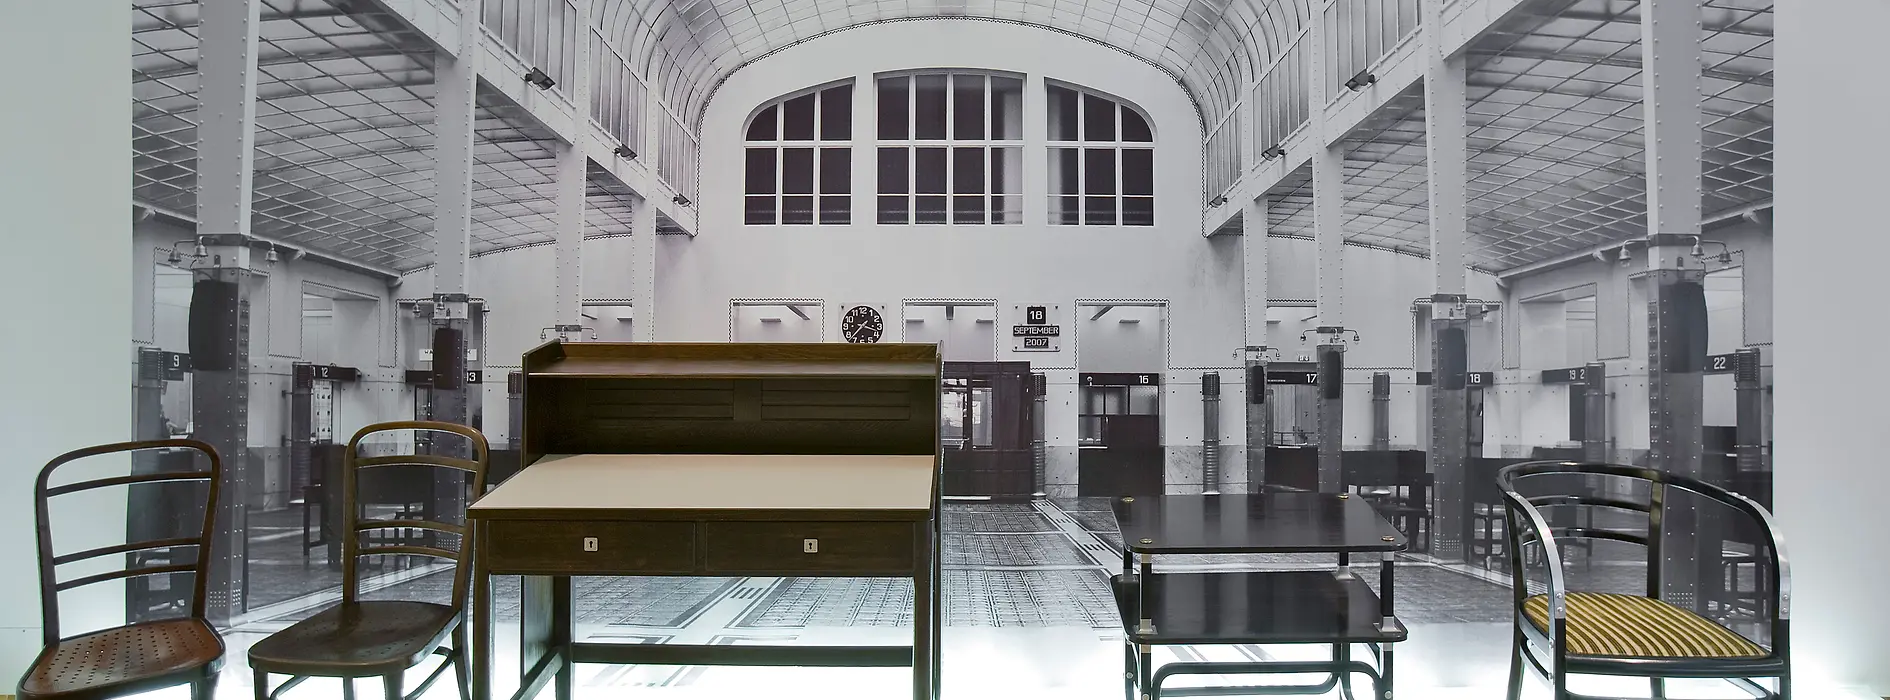 オットー・ワーグナー設計の郵便貯金会館用の調度品、トーネット兄弟社製造、ウィーン1904/06年